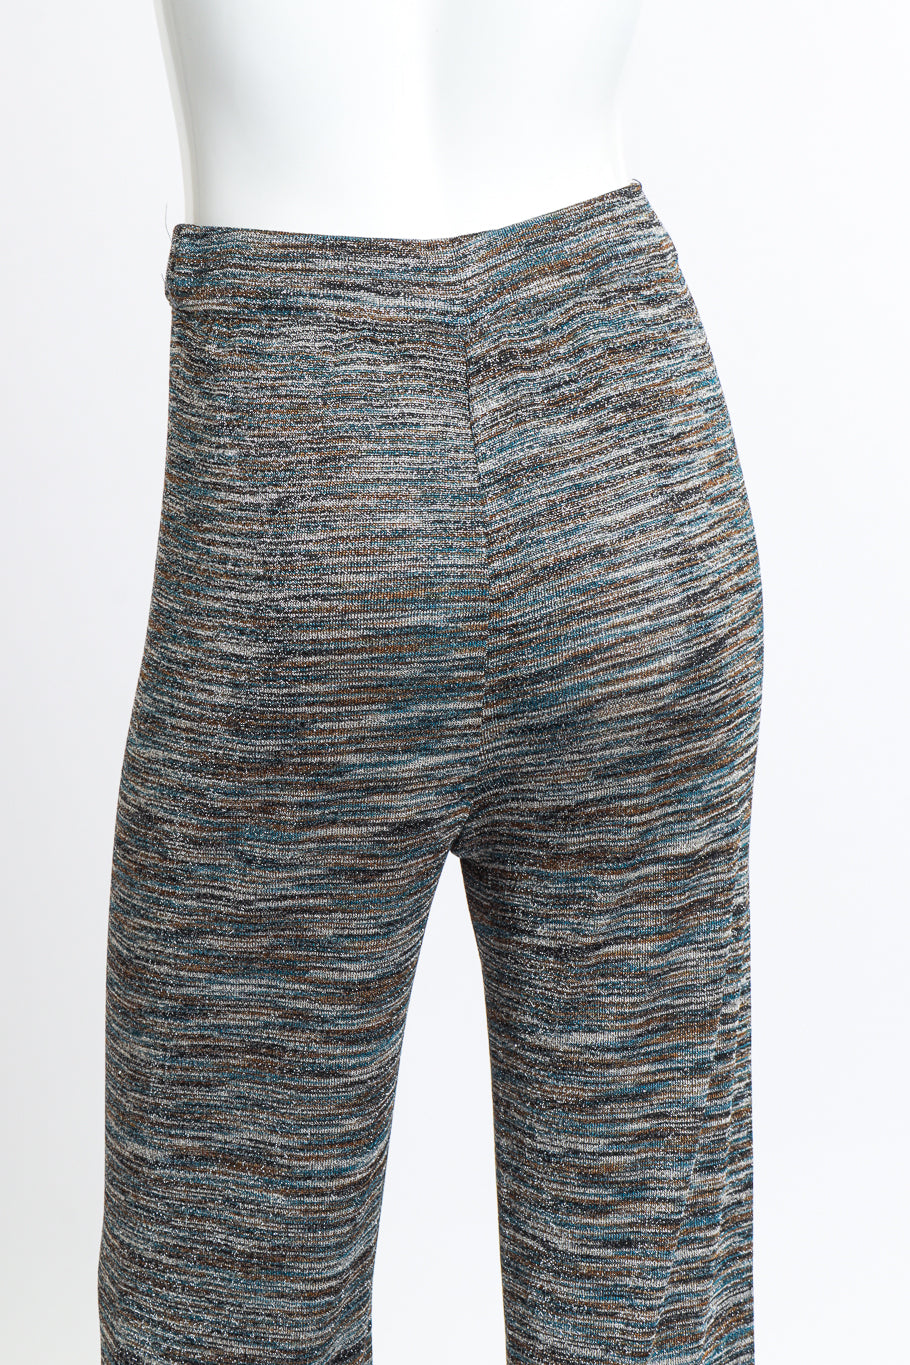 Striped Crop Top & Trouser Set trouser back detail on mannequin @RECESS LA